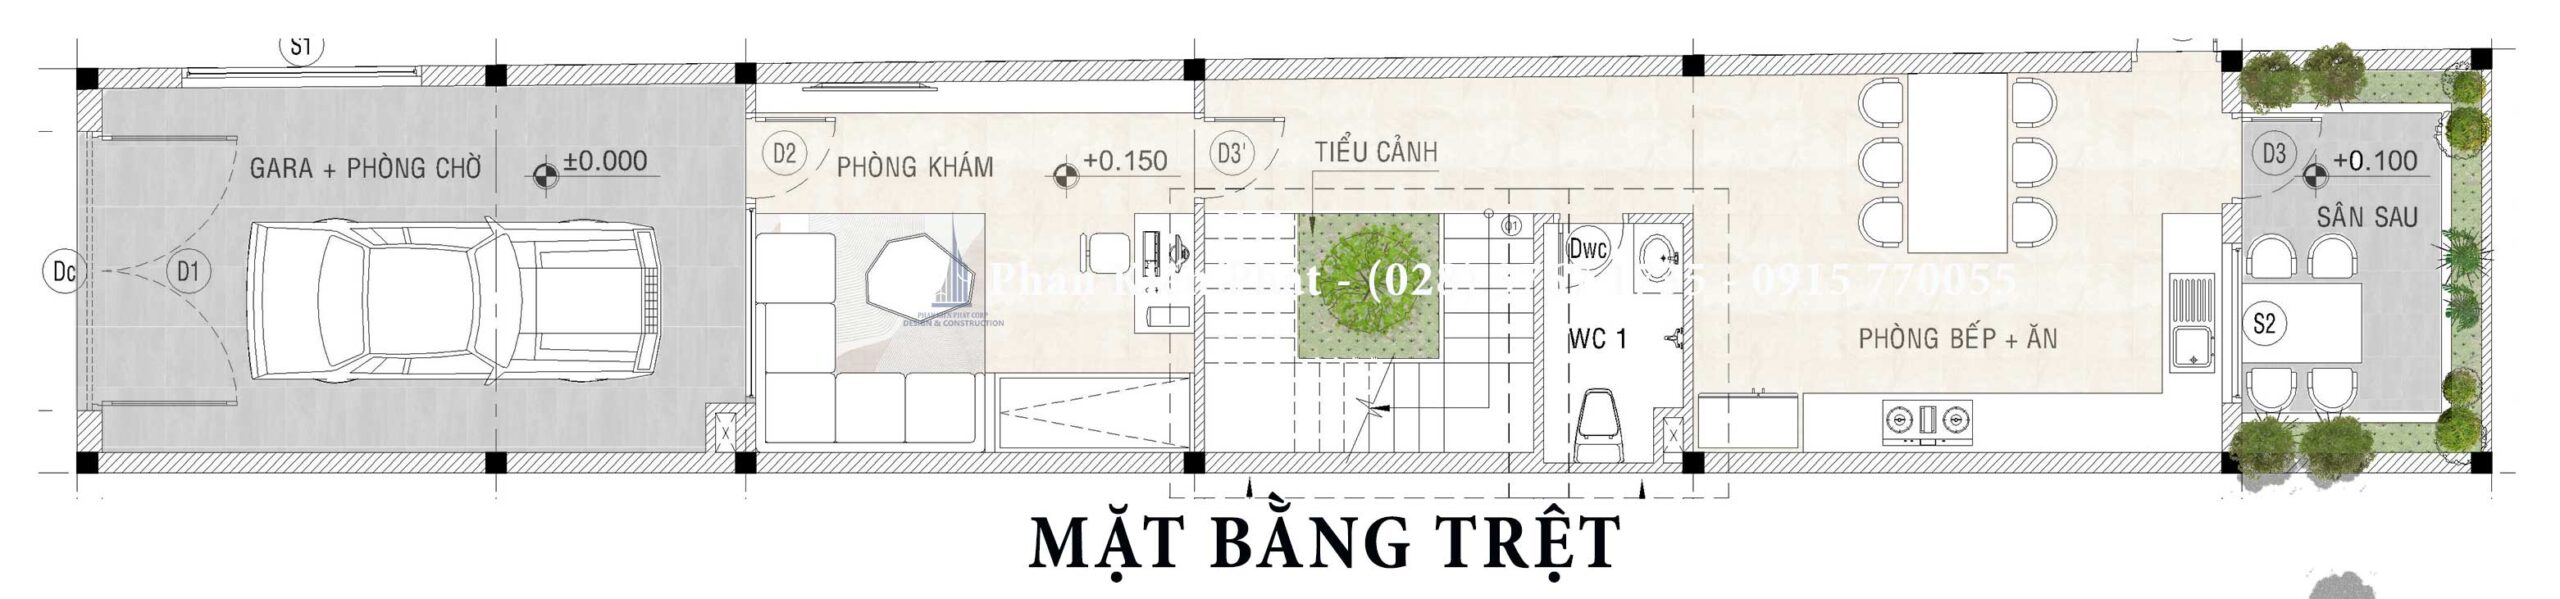 Mat Bang Tret Nha Pho 4 Lau Ket Hop Phong Kham